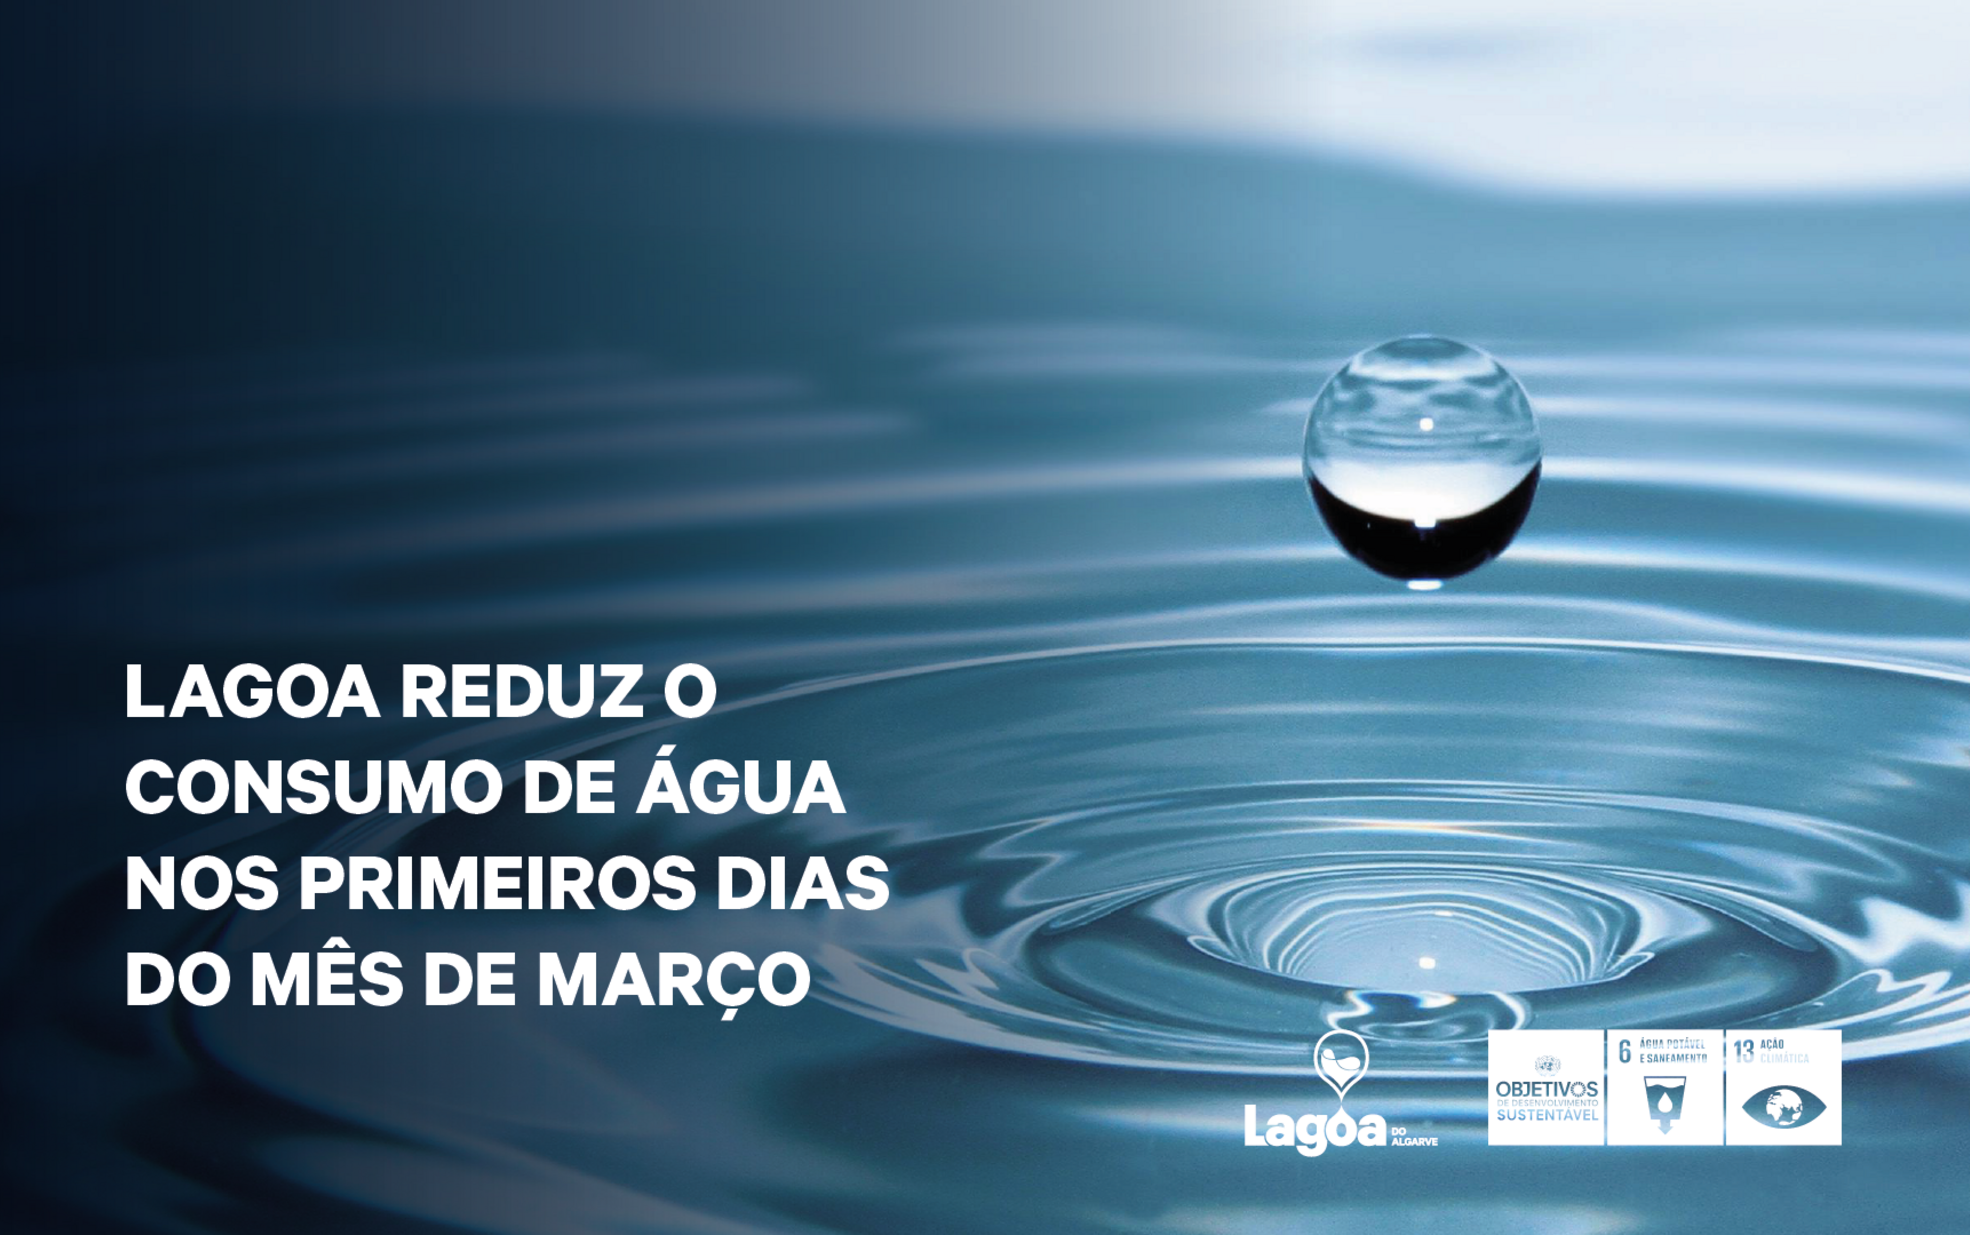 Lagoa Reduz o Consumo de Água nos primeiros dias do mês de março